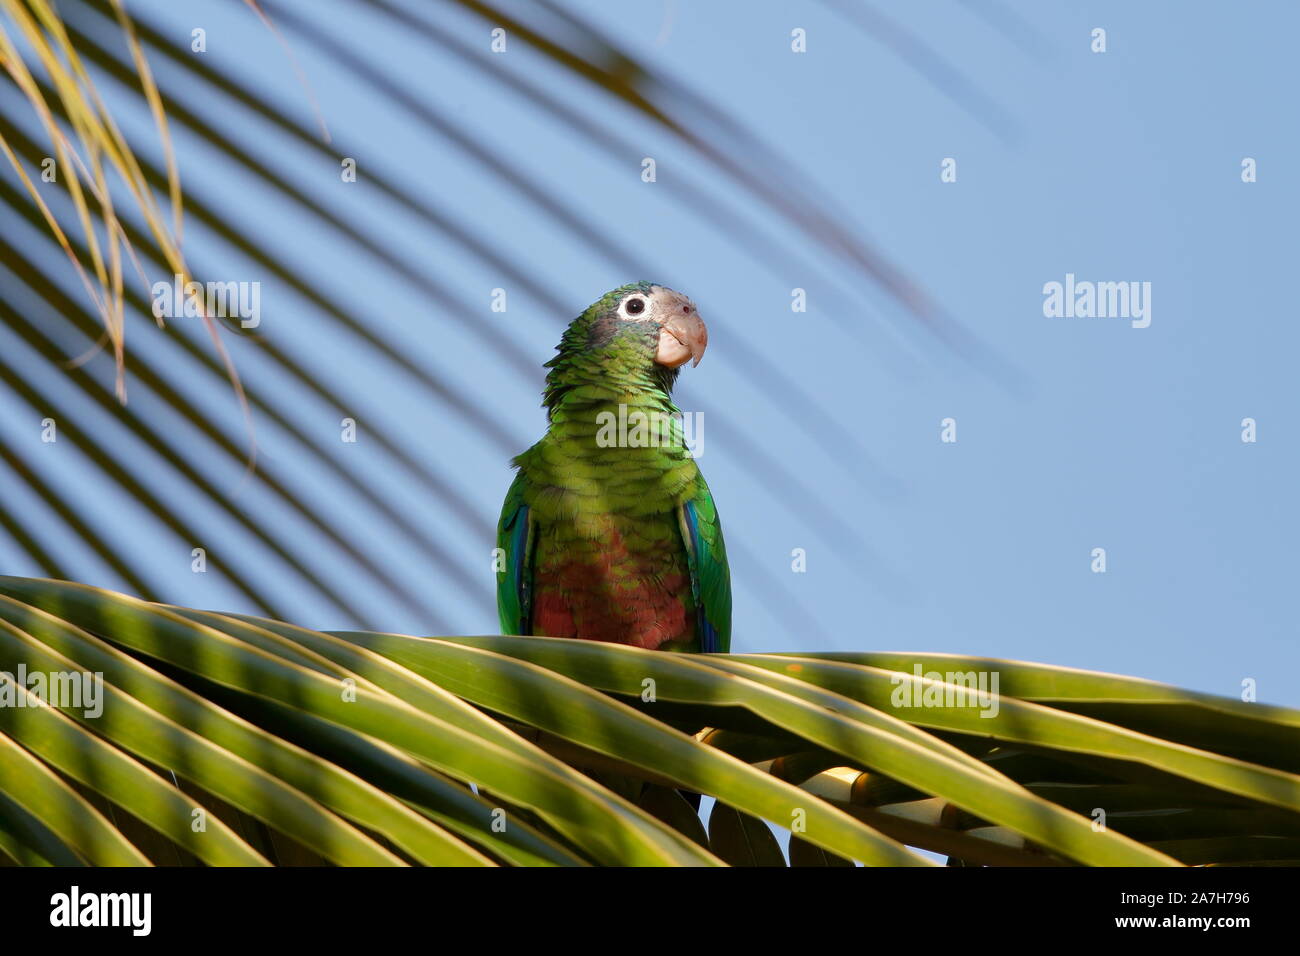 Die Hispaniolan amazon oder Hispaniolan Papagei ist eine Pflanzenart aus  der Gattung der Papagei in der Familie Psittacidae. Es ist auf Hispaniola  gefunden Stockfotografie - Alamy